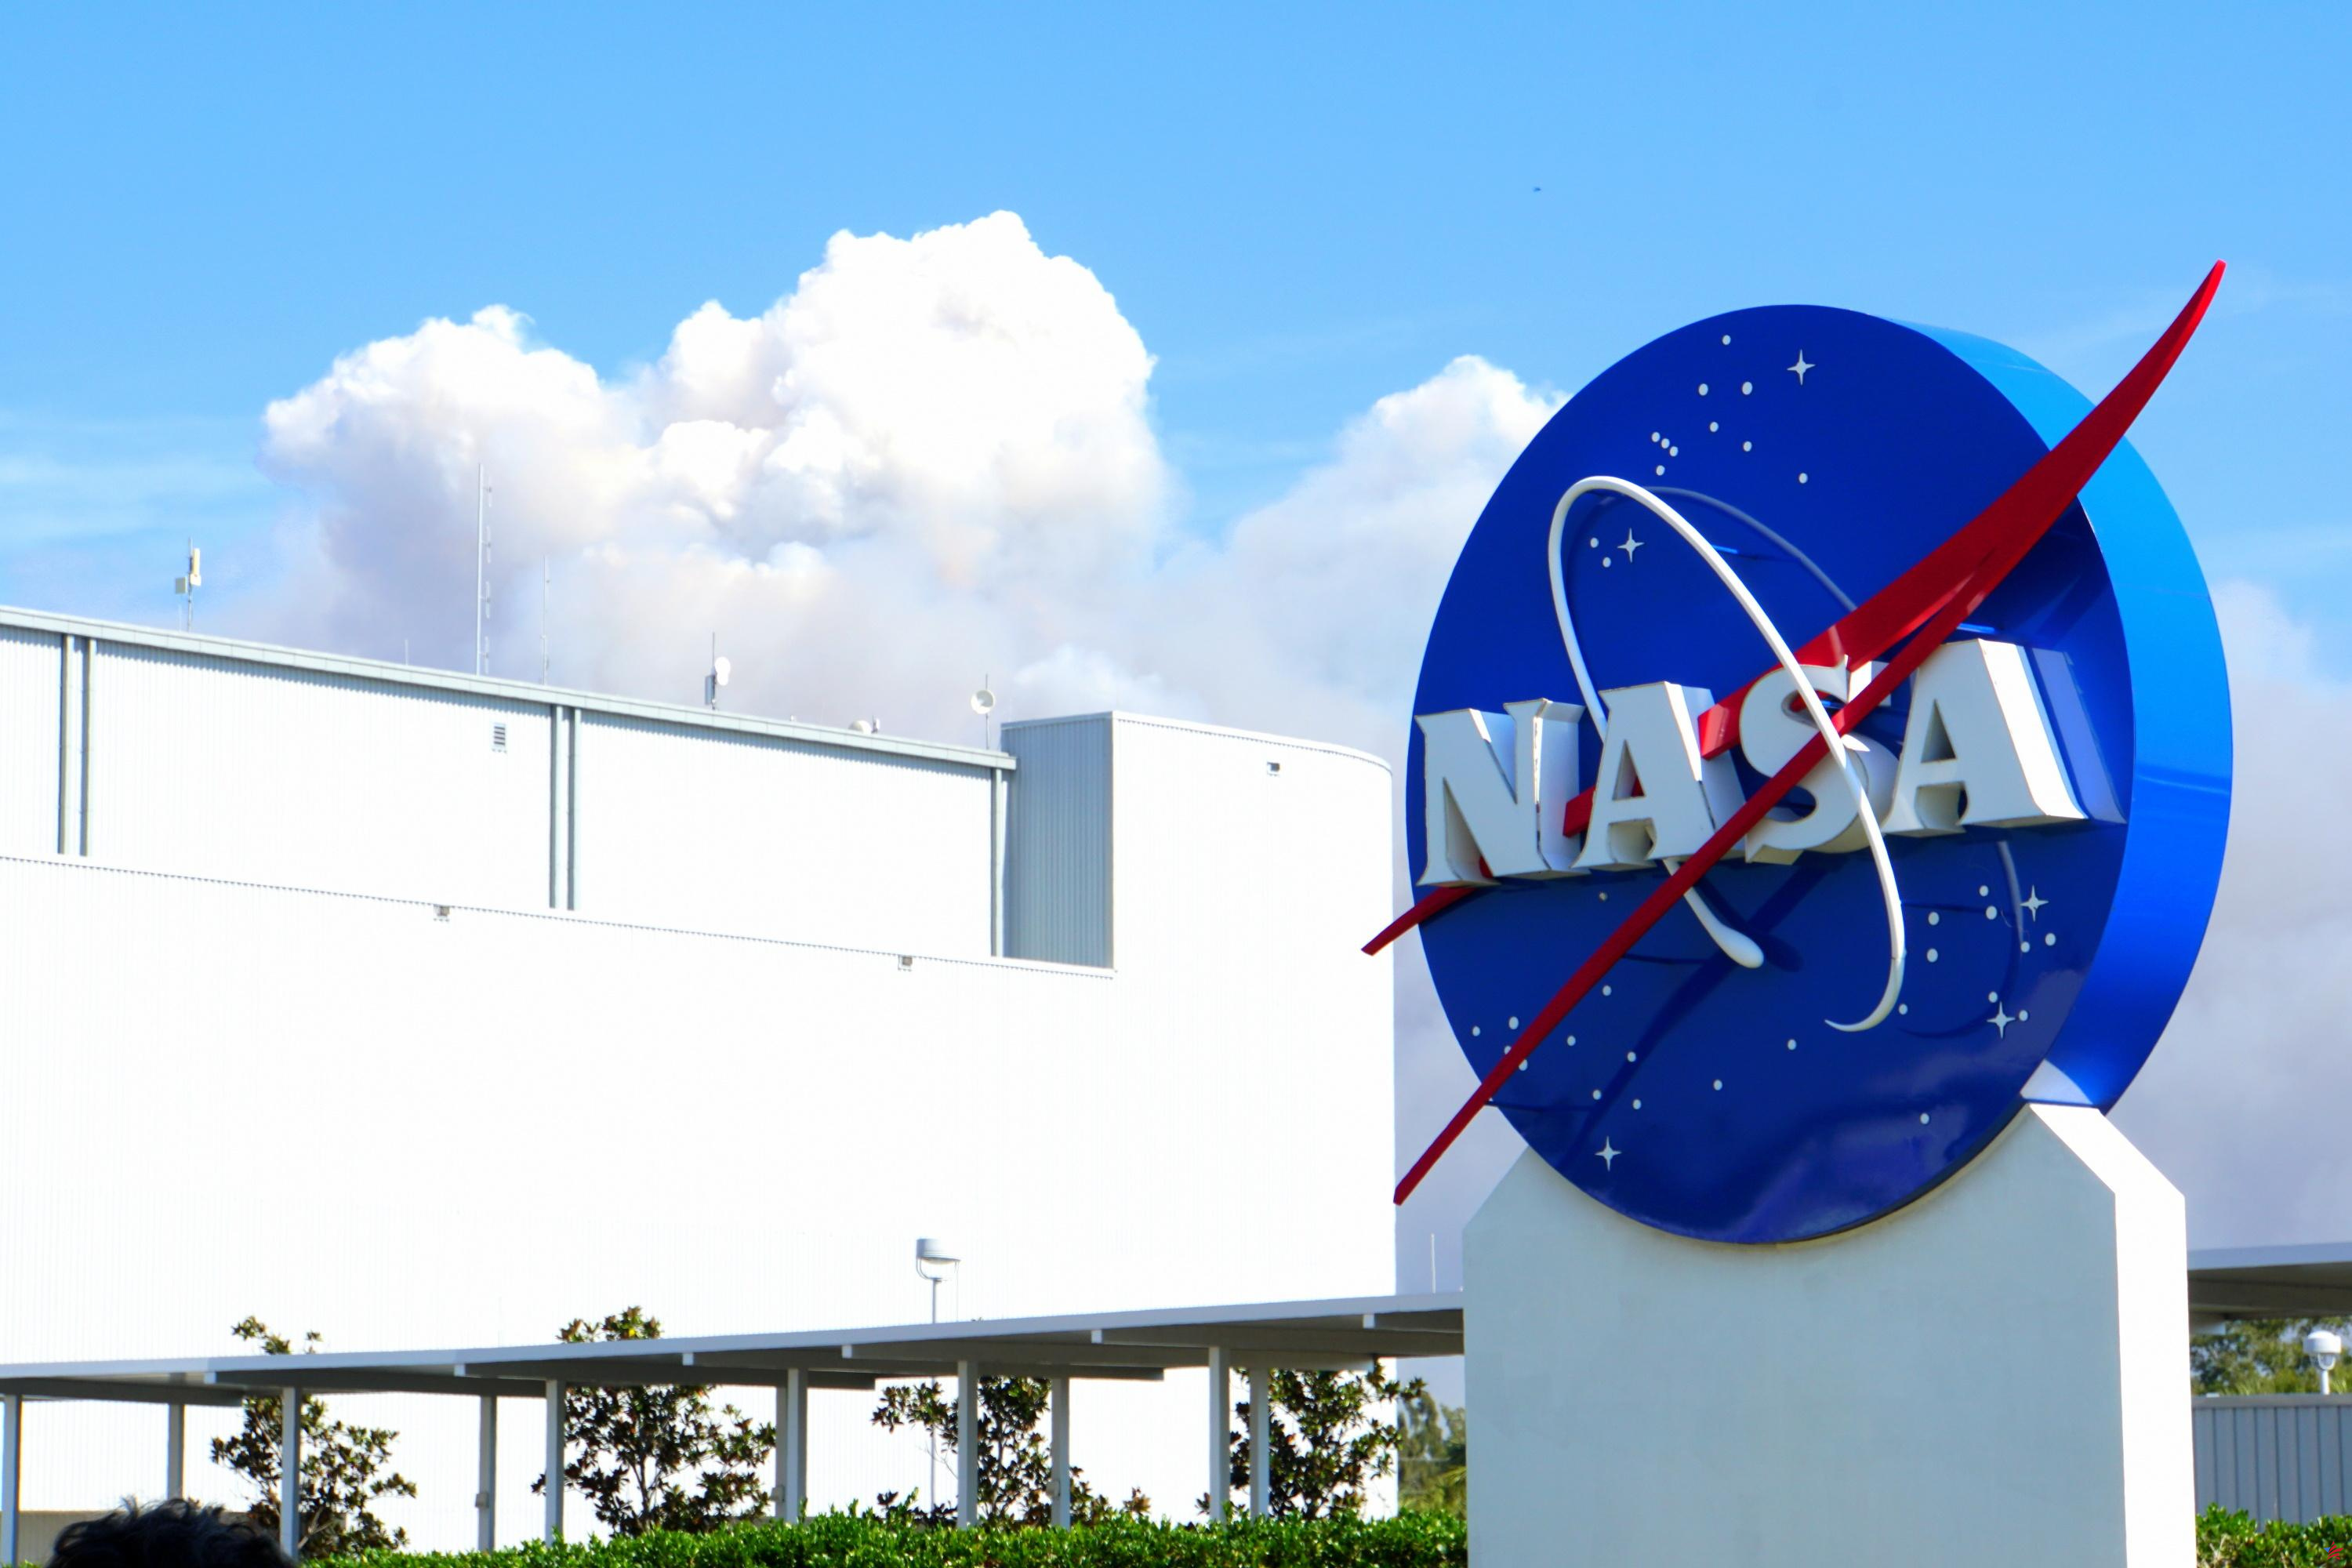 Estados Unidos: la NASA analiza un objeto que cayó sobre una casa en Florida